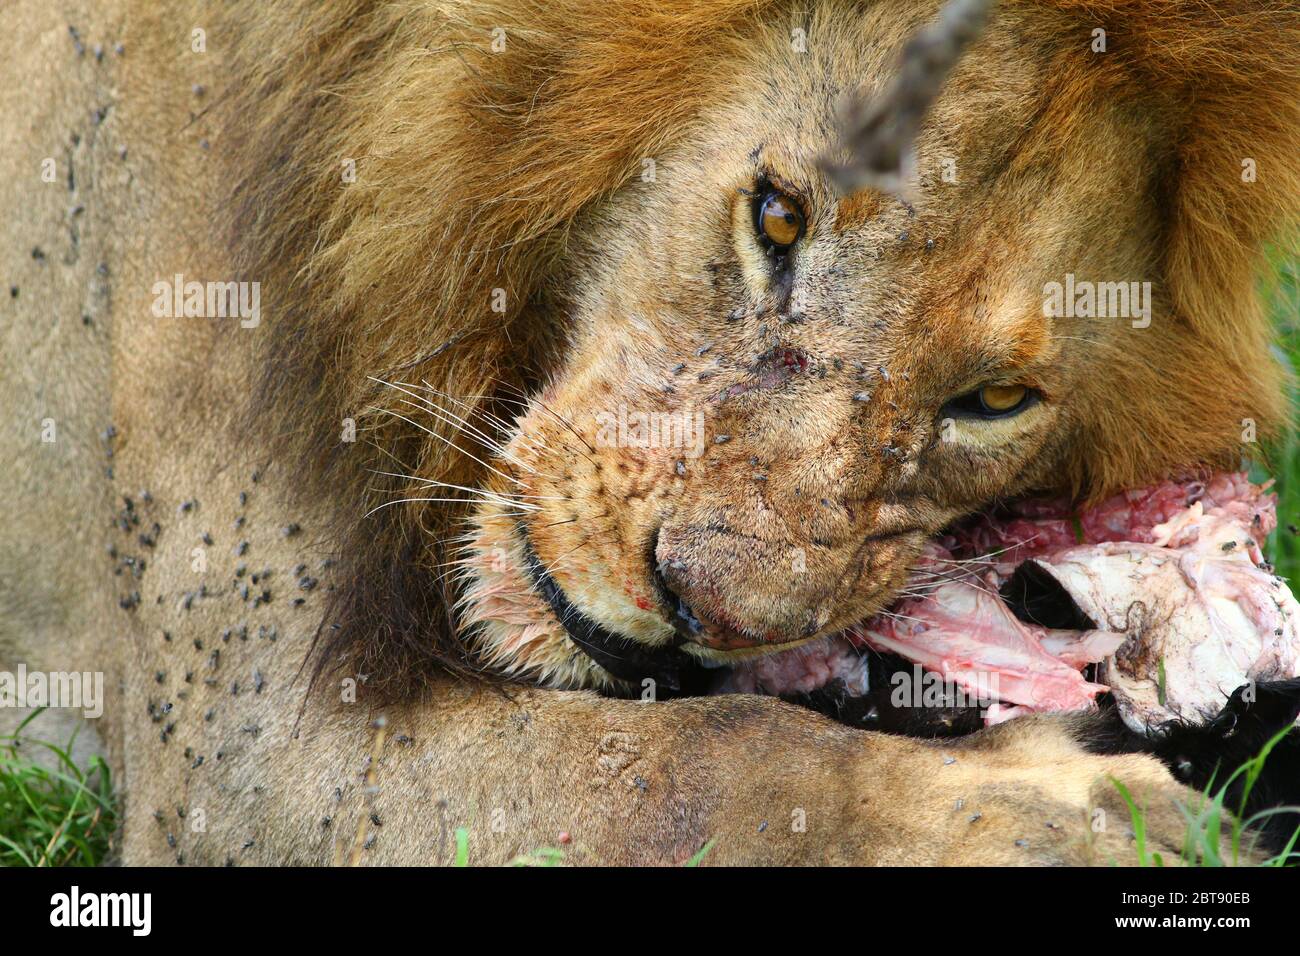 un grand lion mâle avec une bouche tachée de sang mange la proie fraîchement déchirée d'un veau de buffle, gros plan Banque D'Images